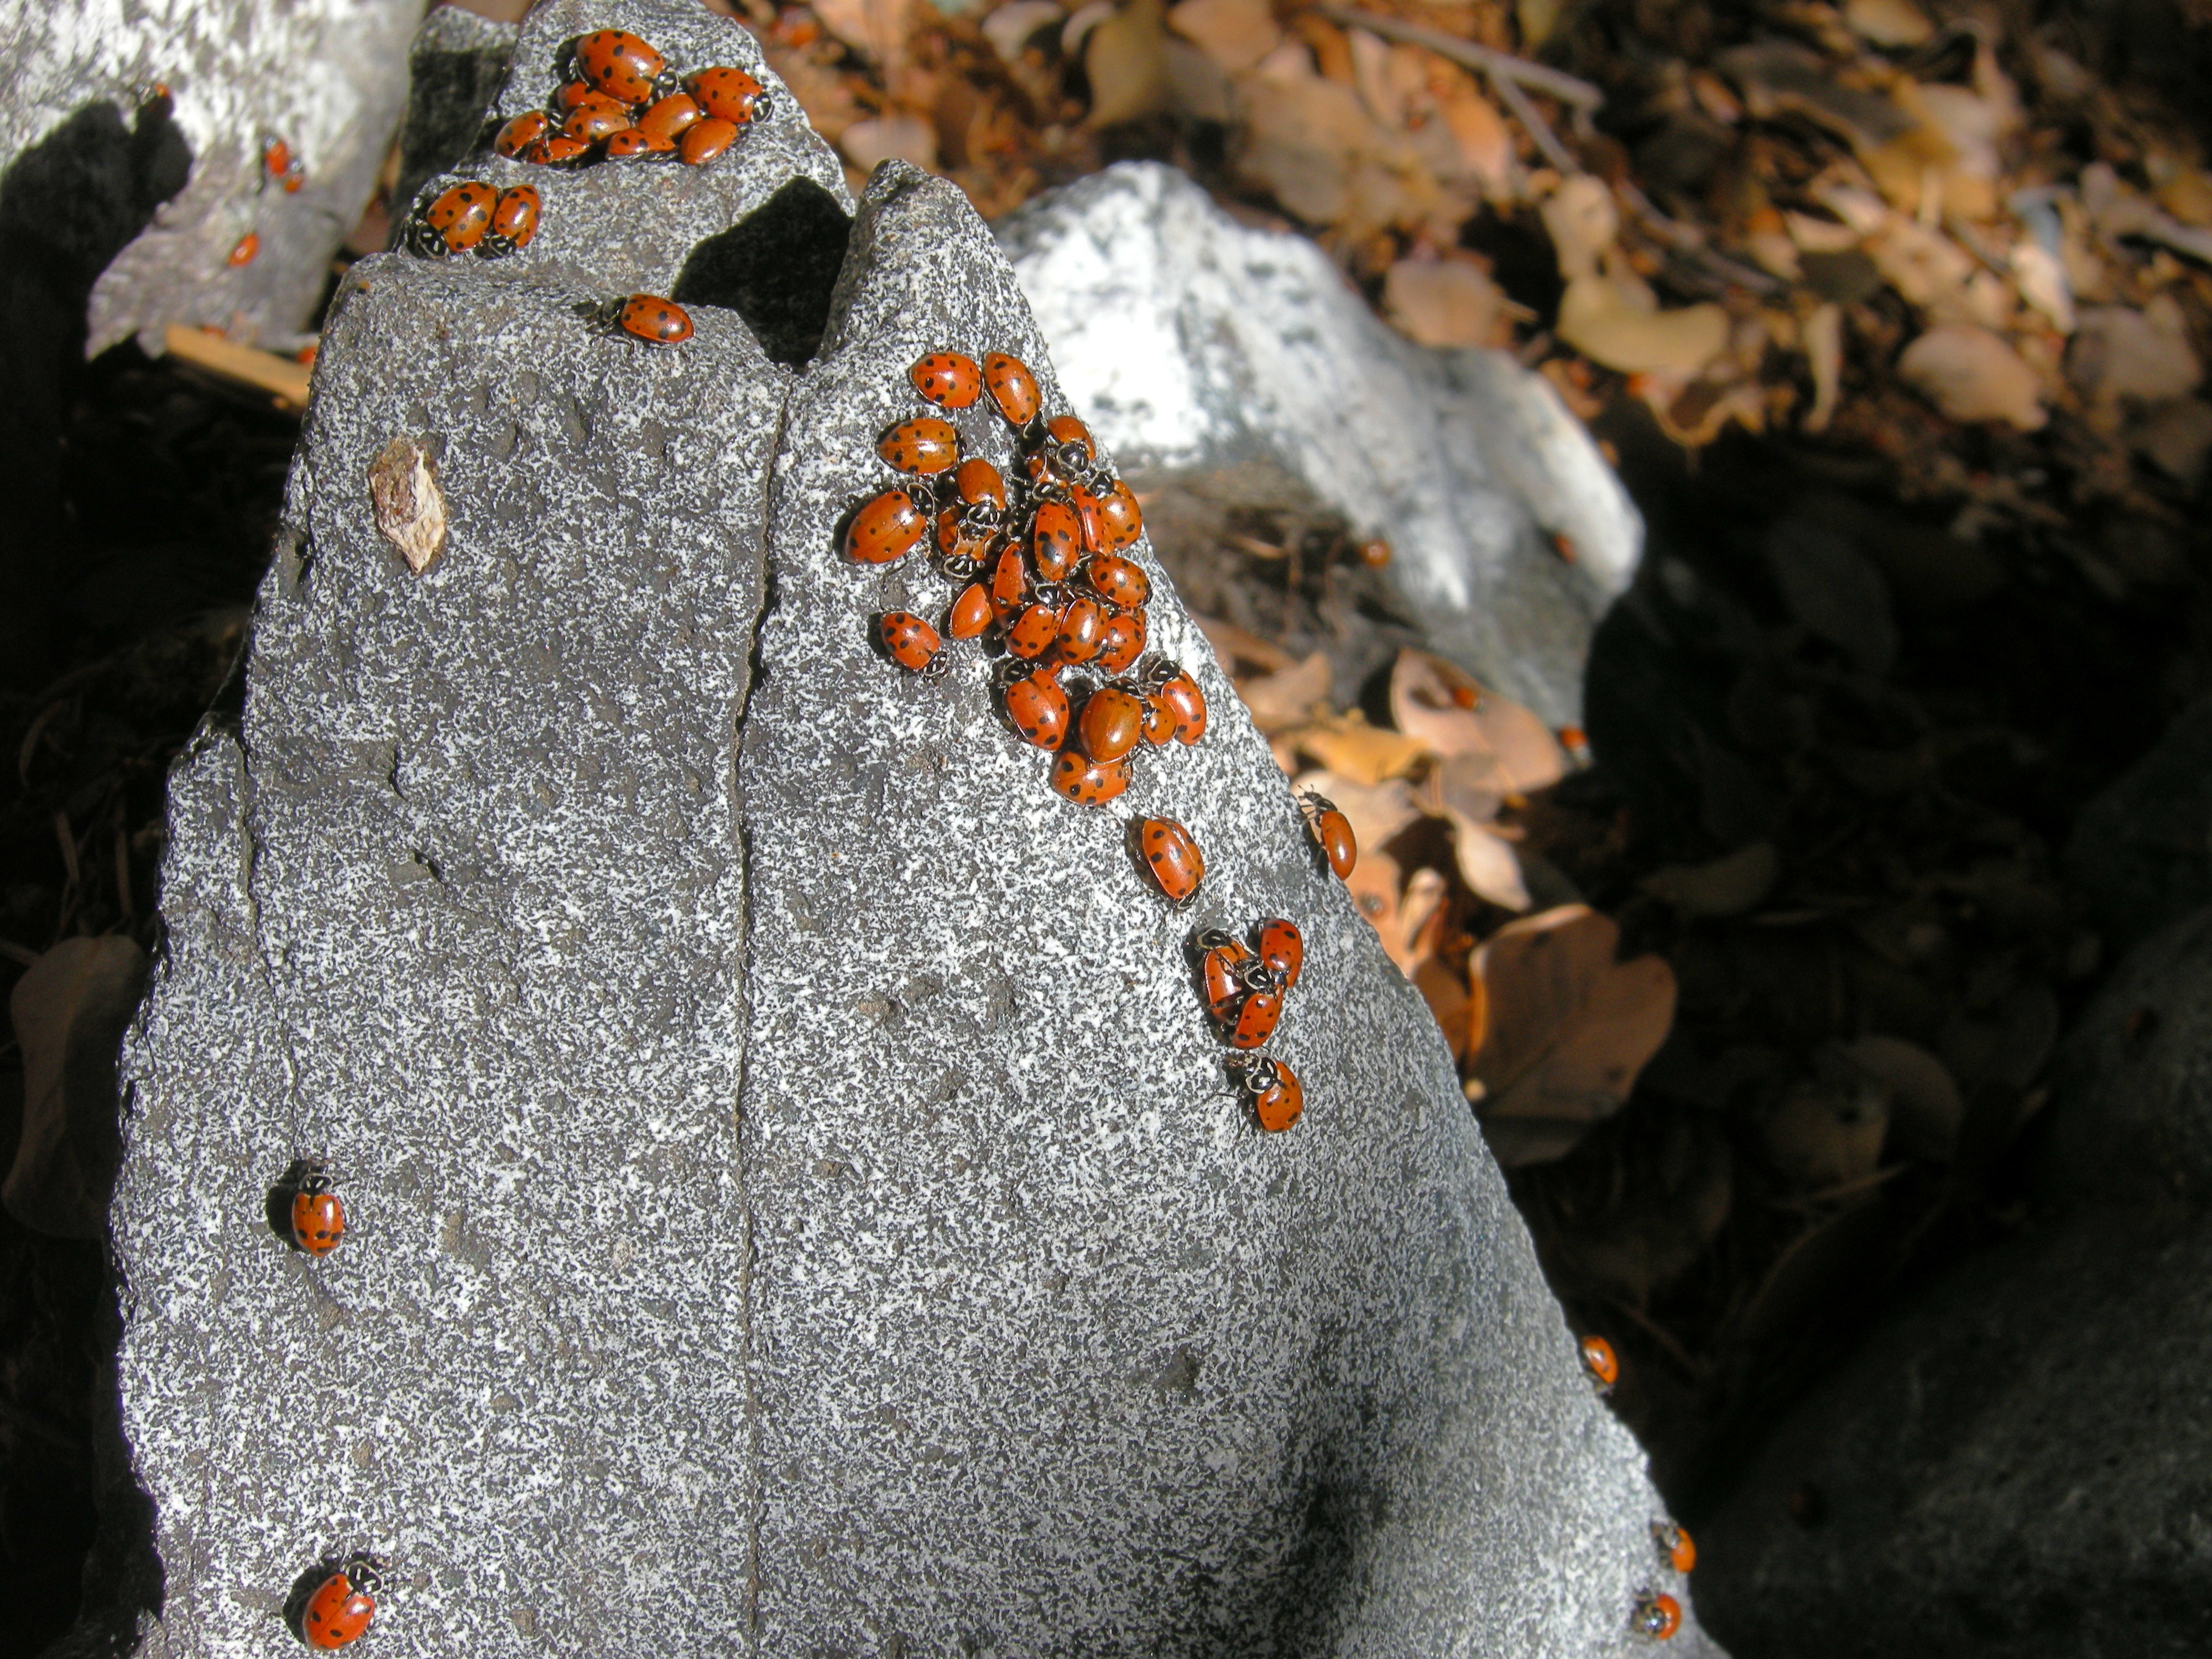 Ladybugs on granite